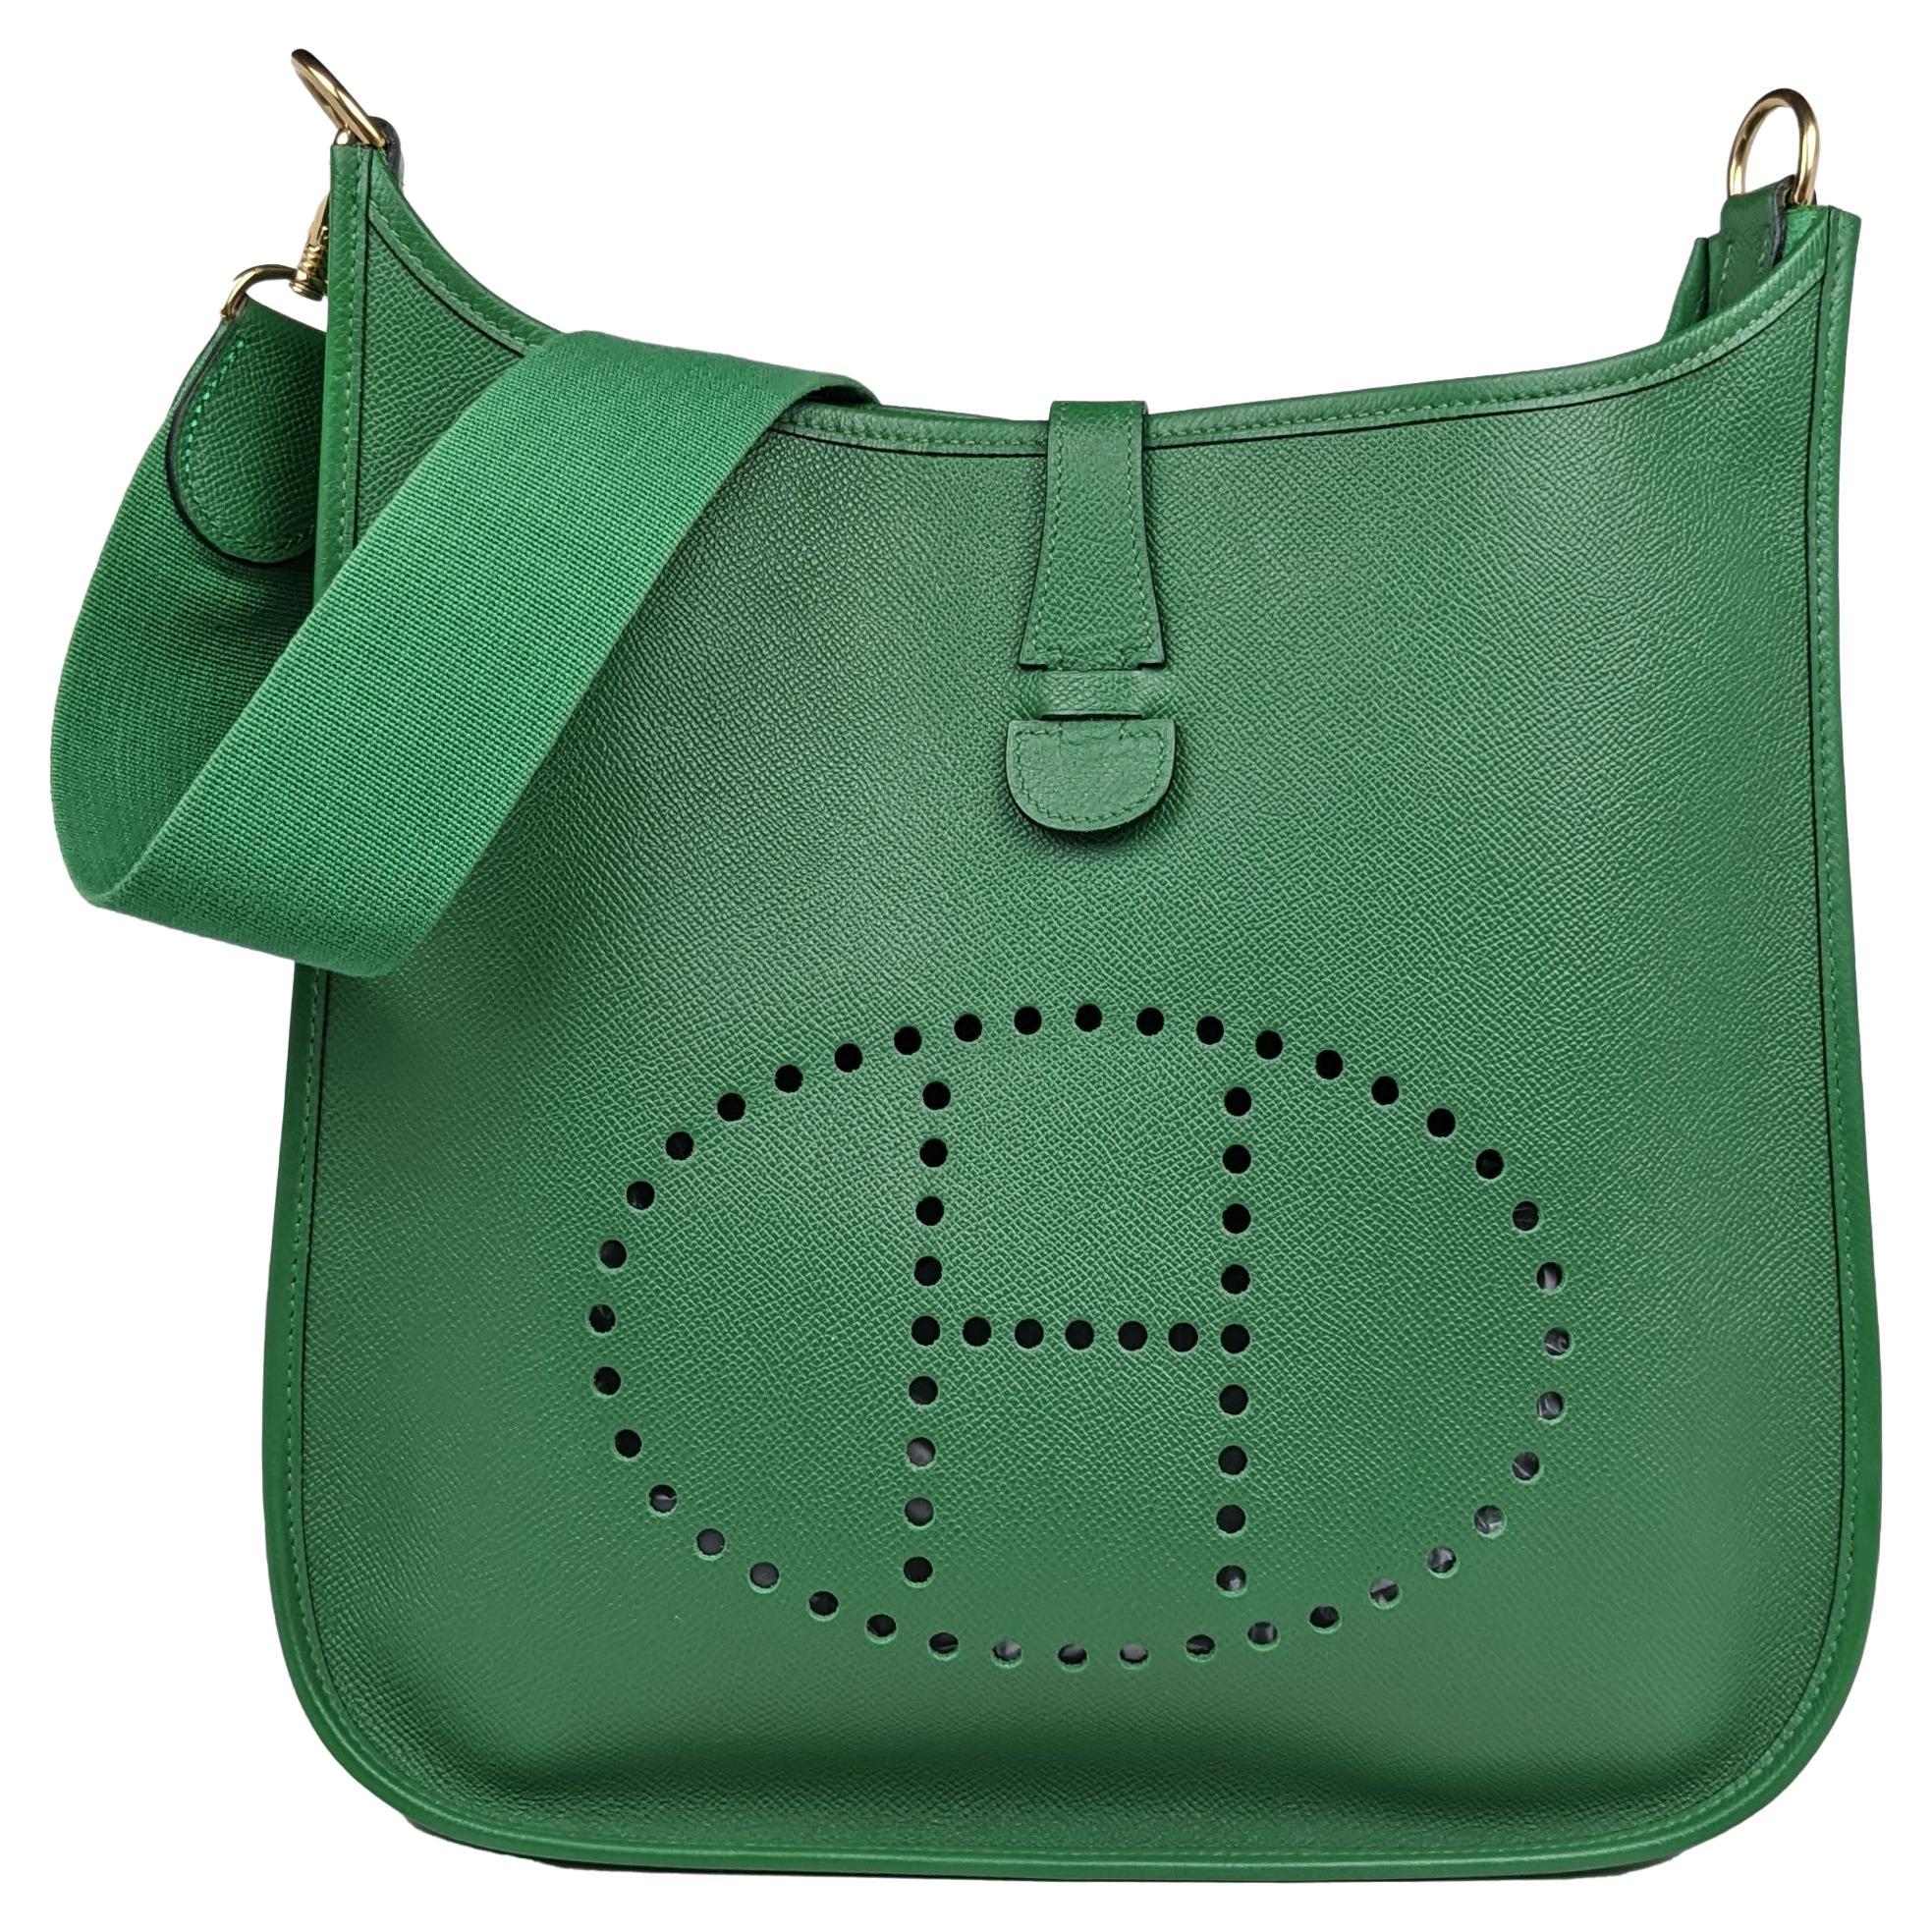 Hermes Evelyne I Gm Large Epsom Green Leather Crossbody Bag